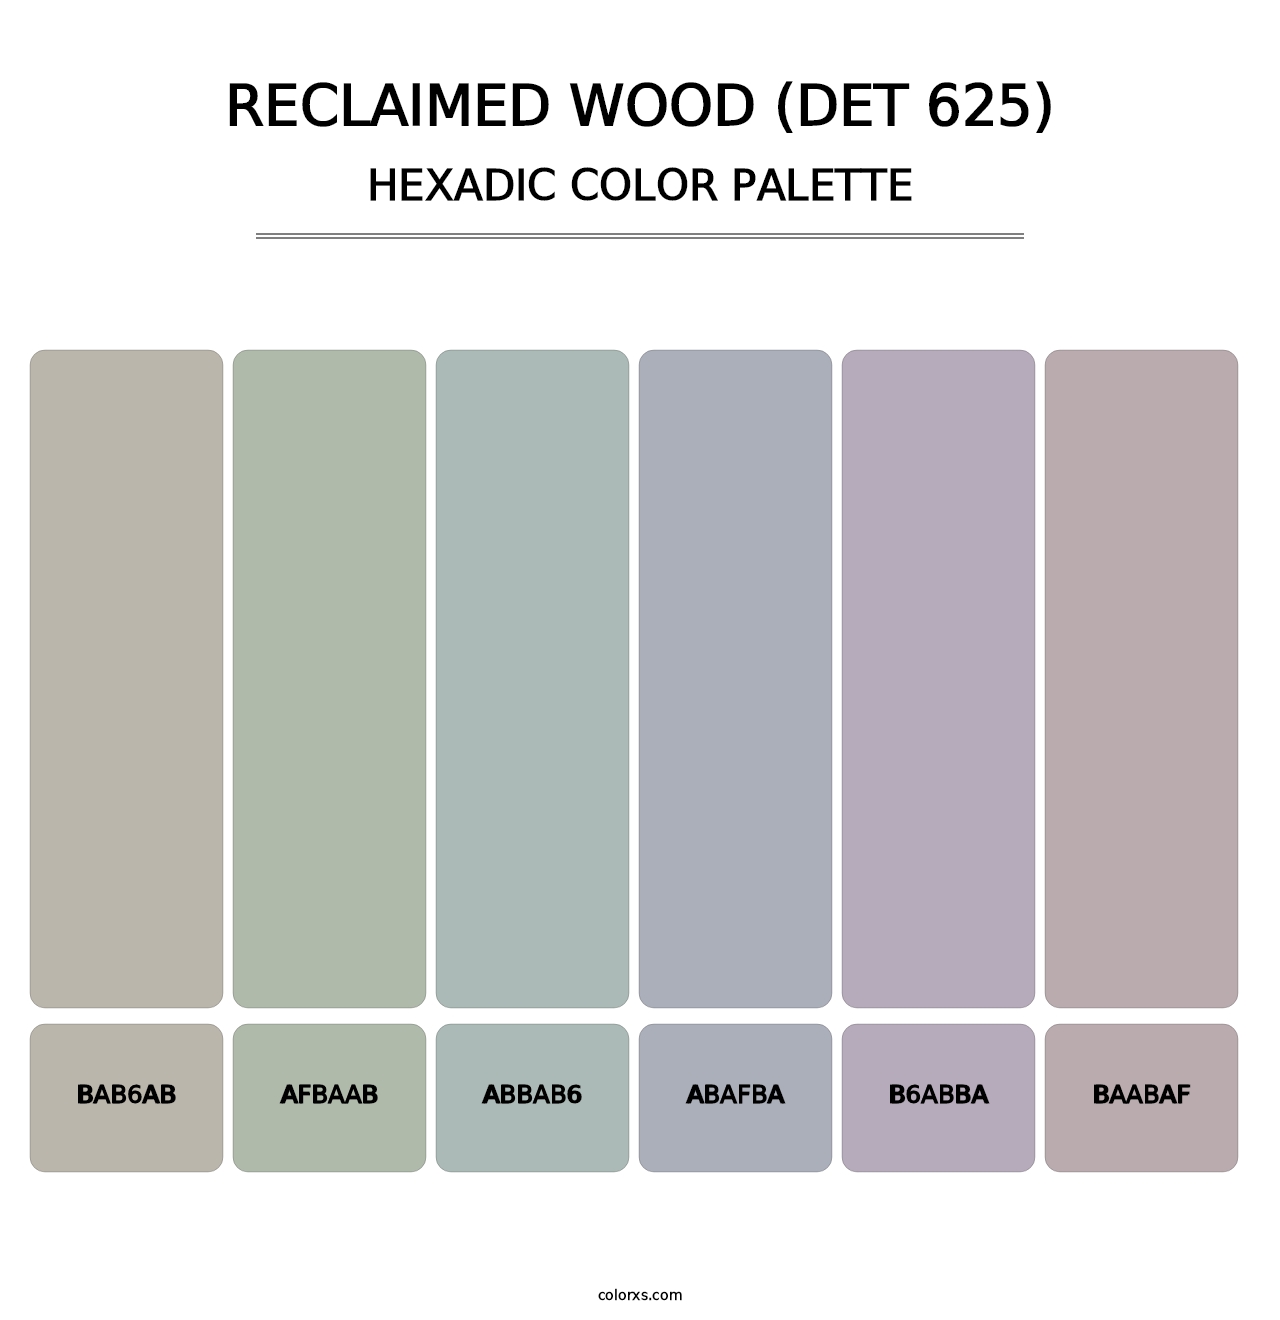 Reclaimed Wood (DET 625) - Hexadic Color Palette